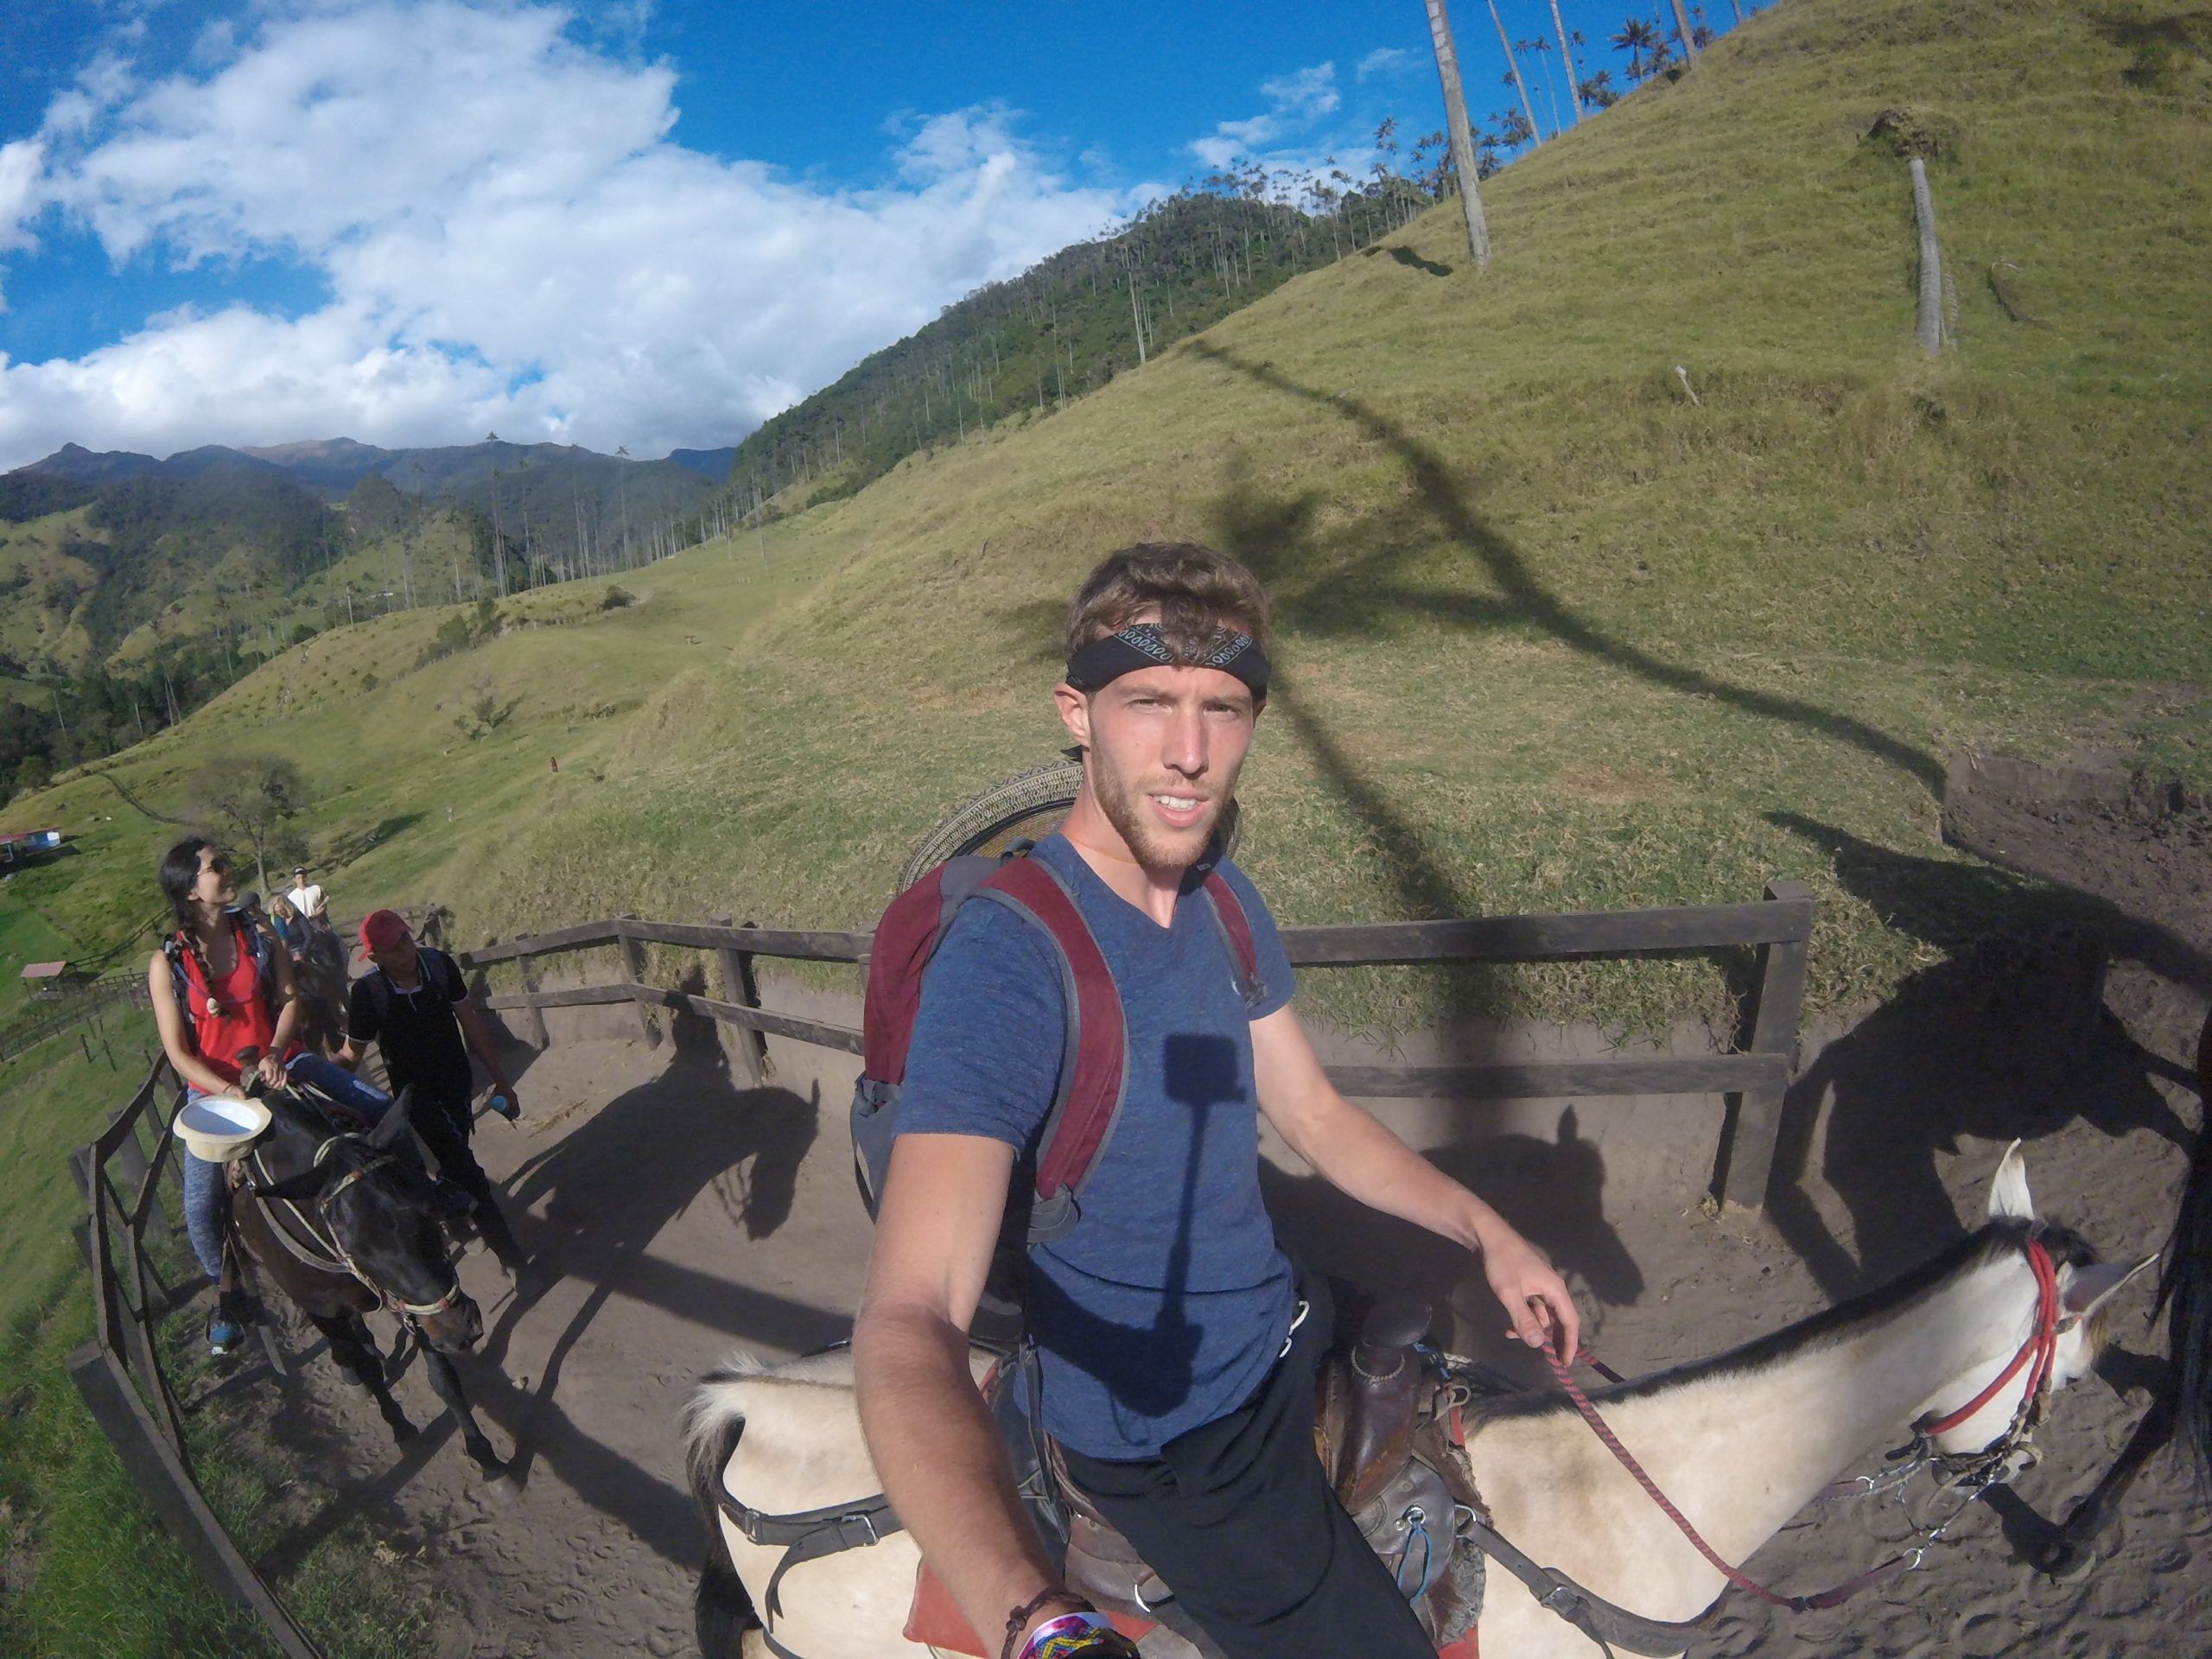 Monter à cheval dans la vallée de Cocora, l'incontournable dans l'optique du que faire en Colombie.